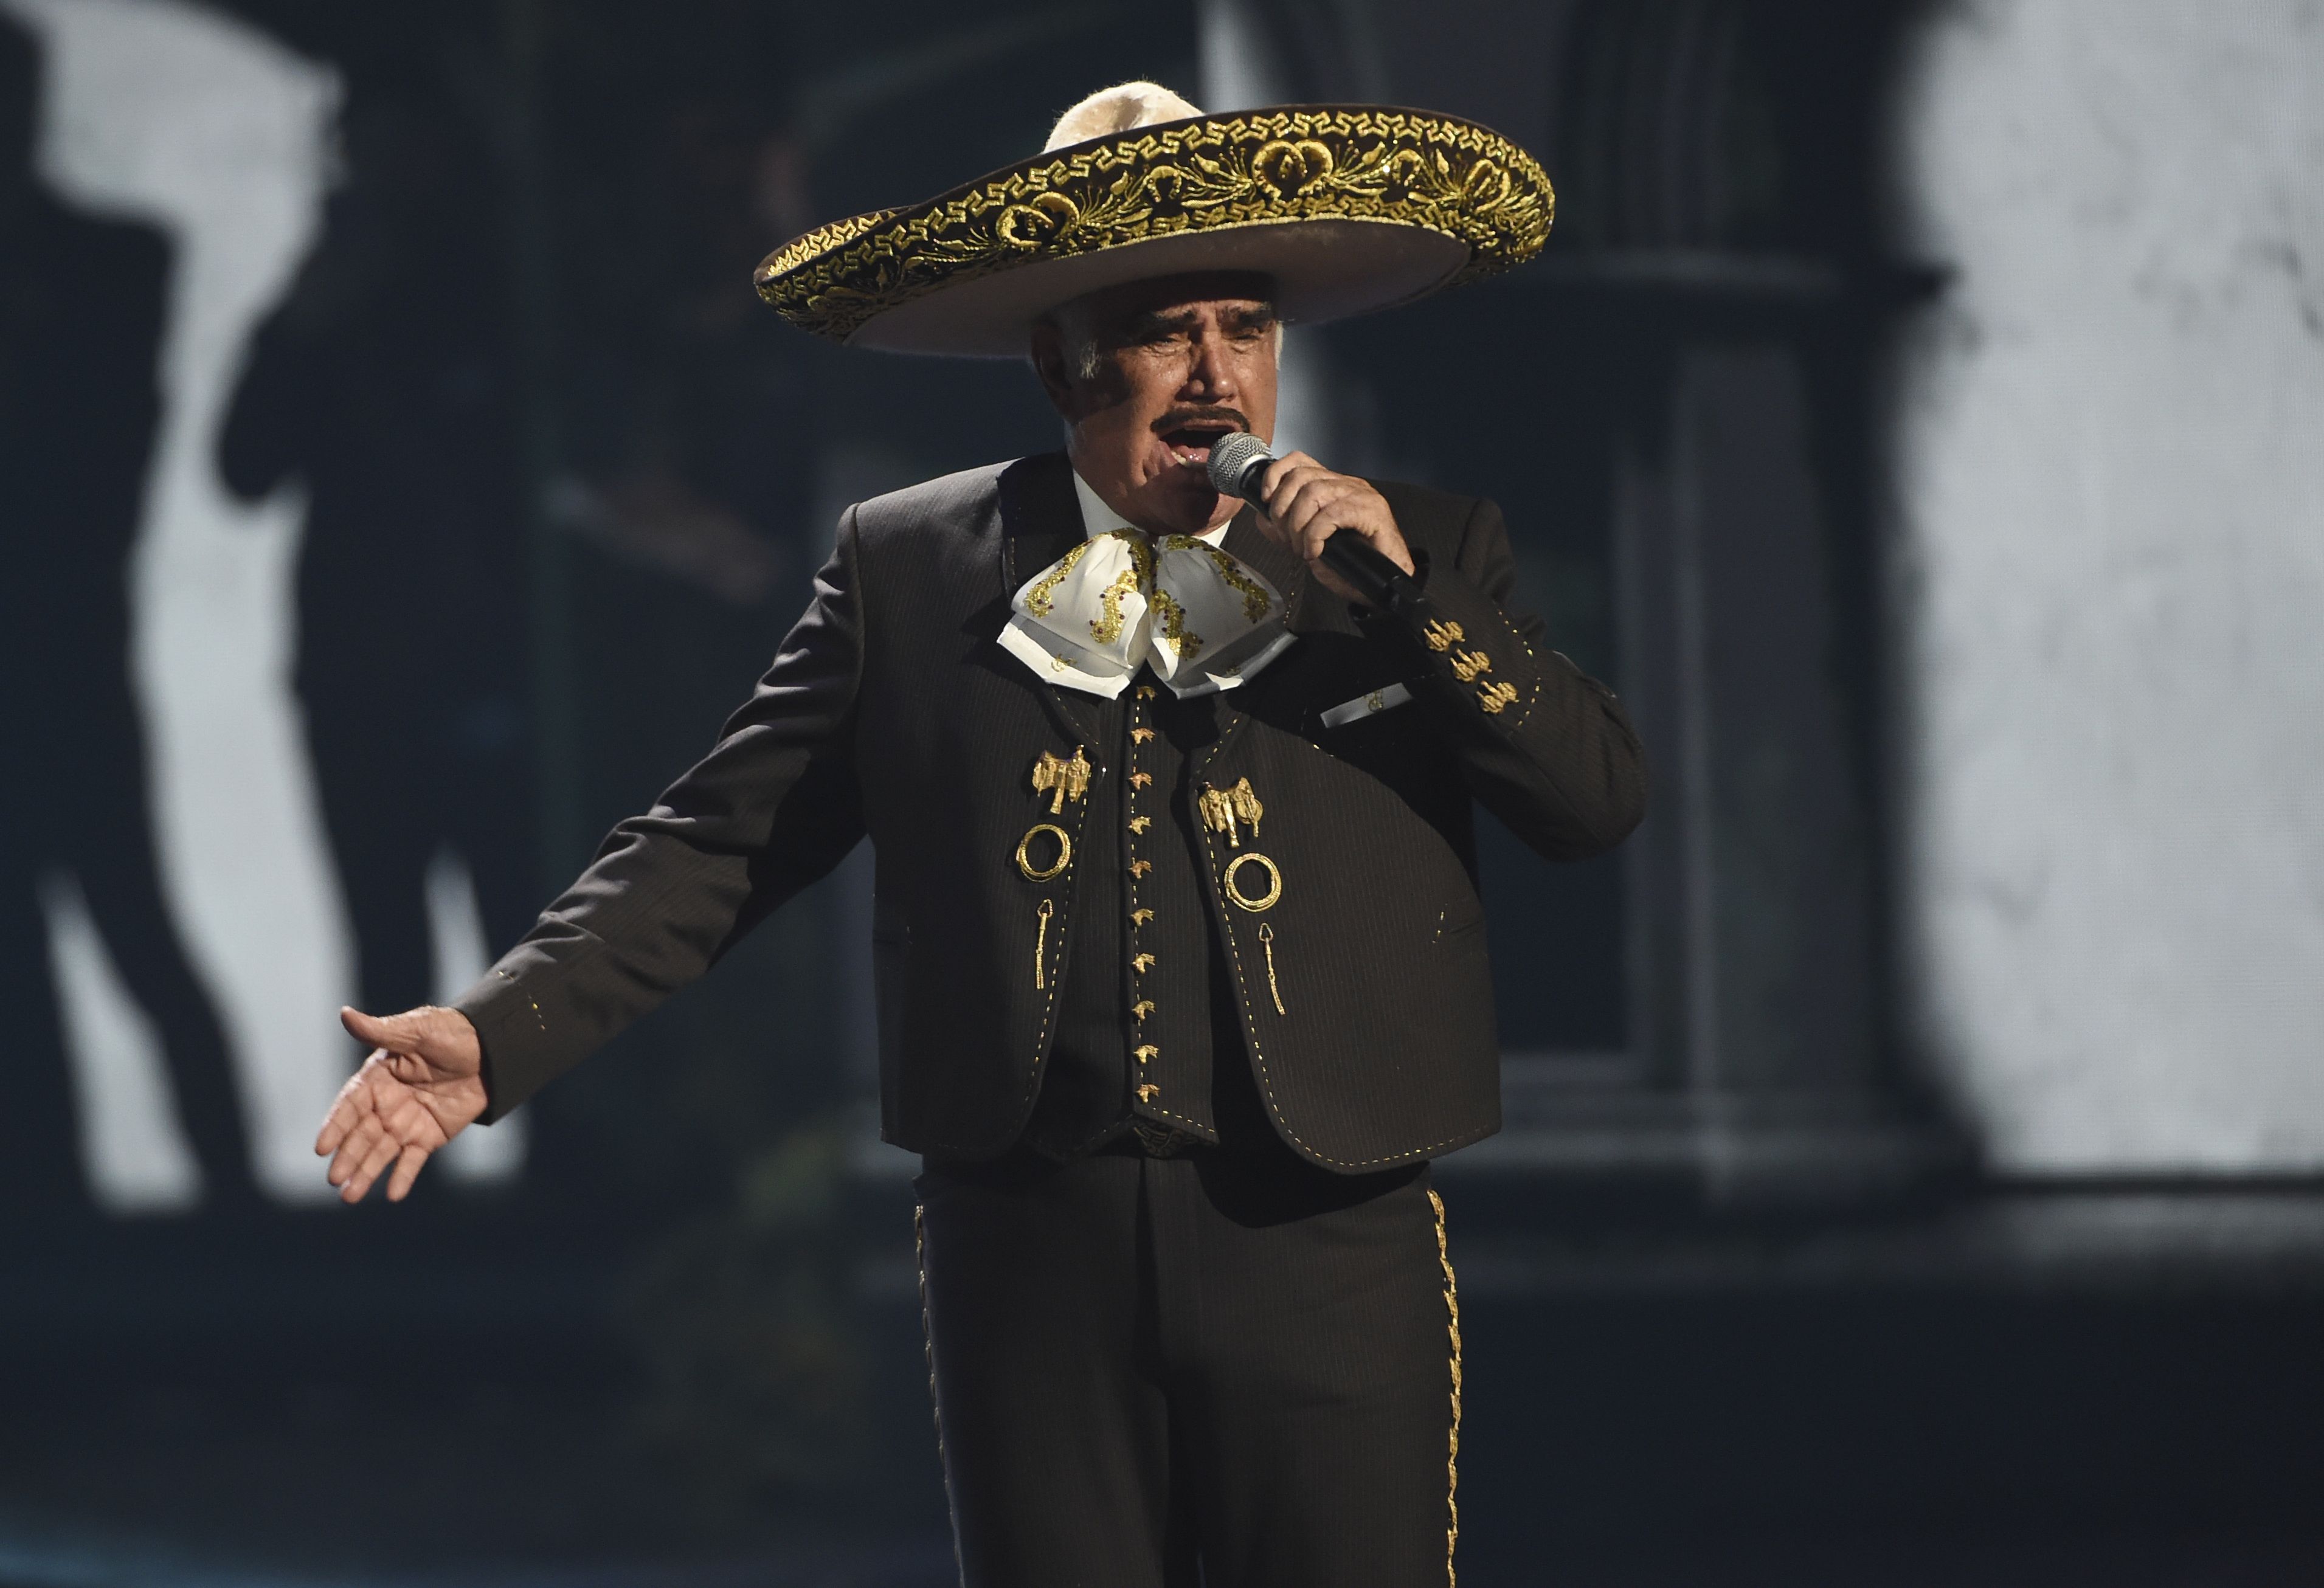 ARCHIVO- Vicente Fernández durante su presentación en la 20a entrega del Latin Grammy el 14 de noviembre de, 2019 en Las Vegas. Fernández ganó póstumamente el Grammy al mejor álbum de música regional mexicana (incluyendo tejana) por “A mis 80's” el domingo 3 de abril de 2022. (Foto AP/Chris Pizzello, archivo)